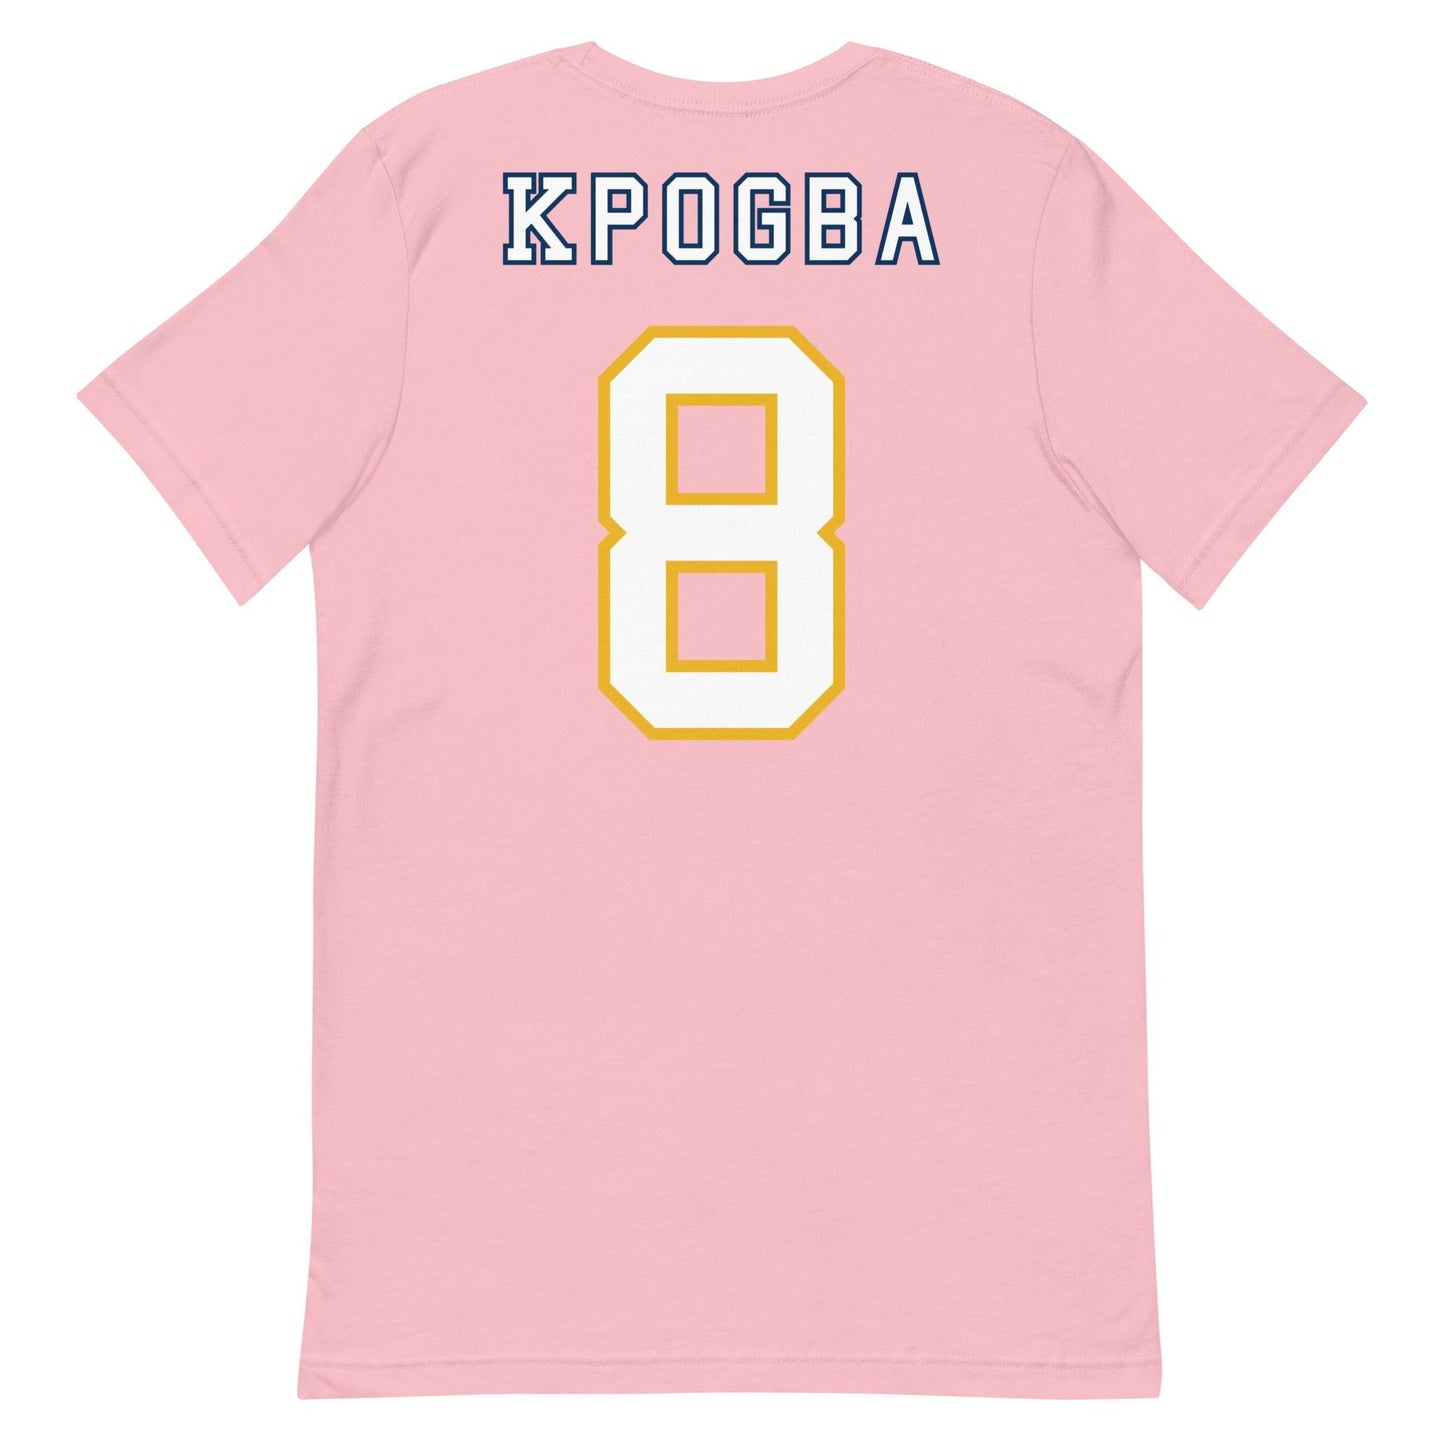 Lee Kpogba "Jersey" t-shirt - Fan Arch